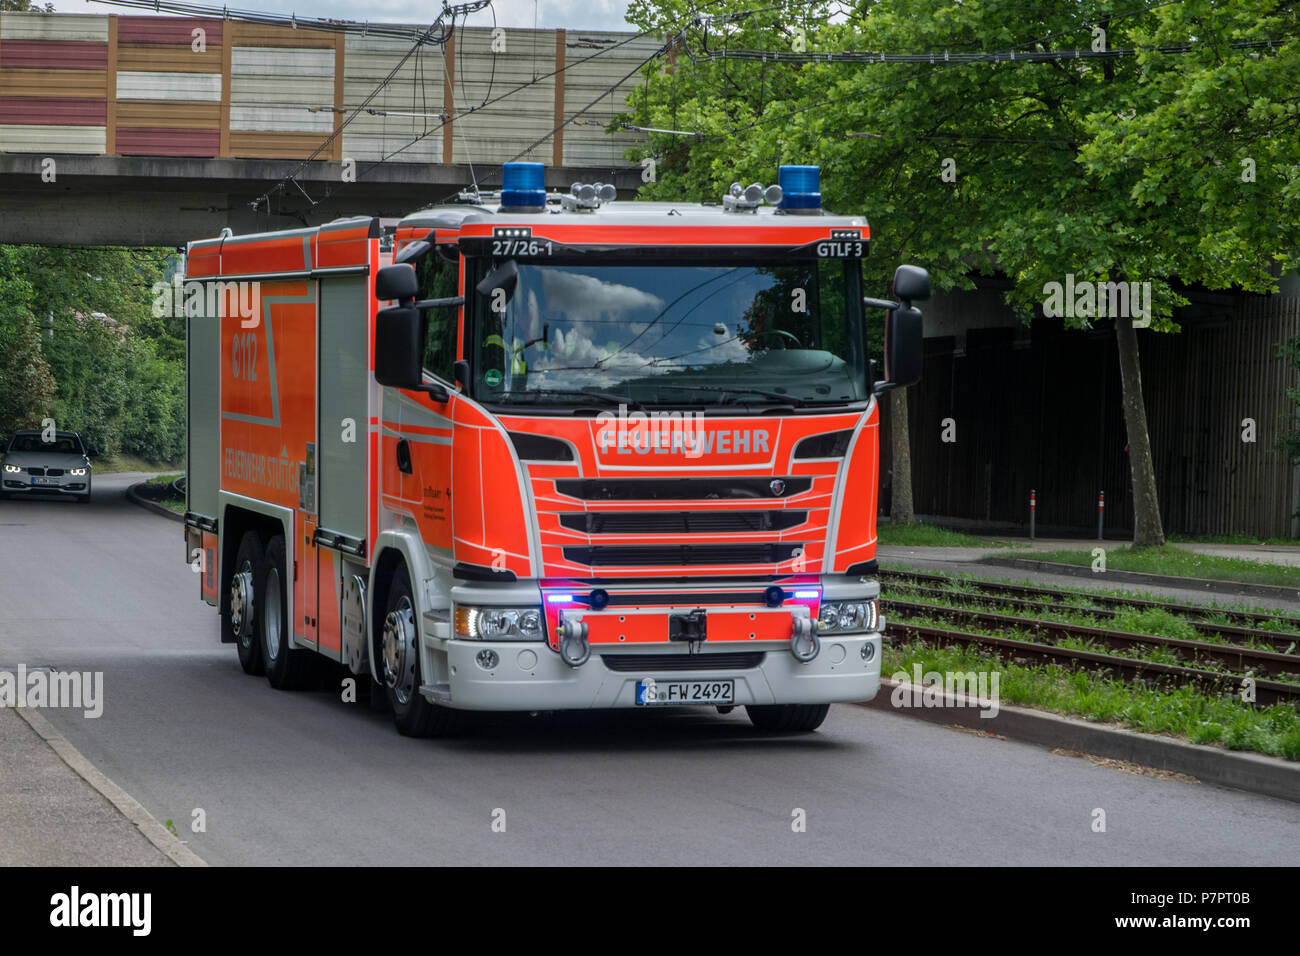 Schauübung der Jugendfeuerwehr der Freiwilligen Feuerwehr Stuttgart-Stammheim am Tag der offenen Tür, Deutschland Banque D'Images